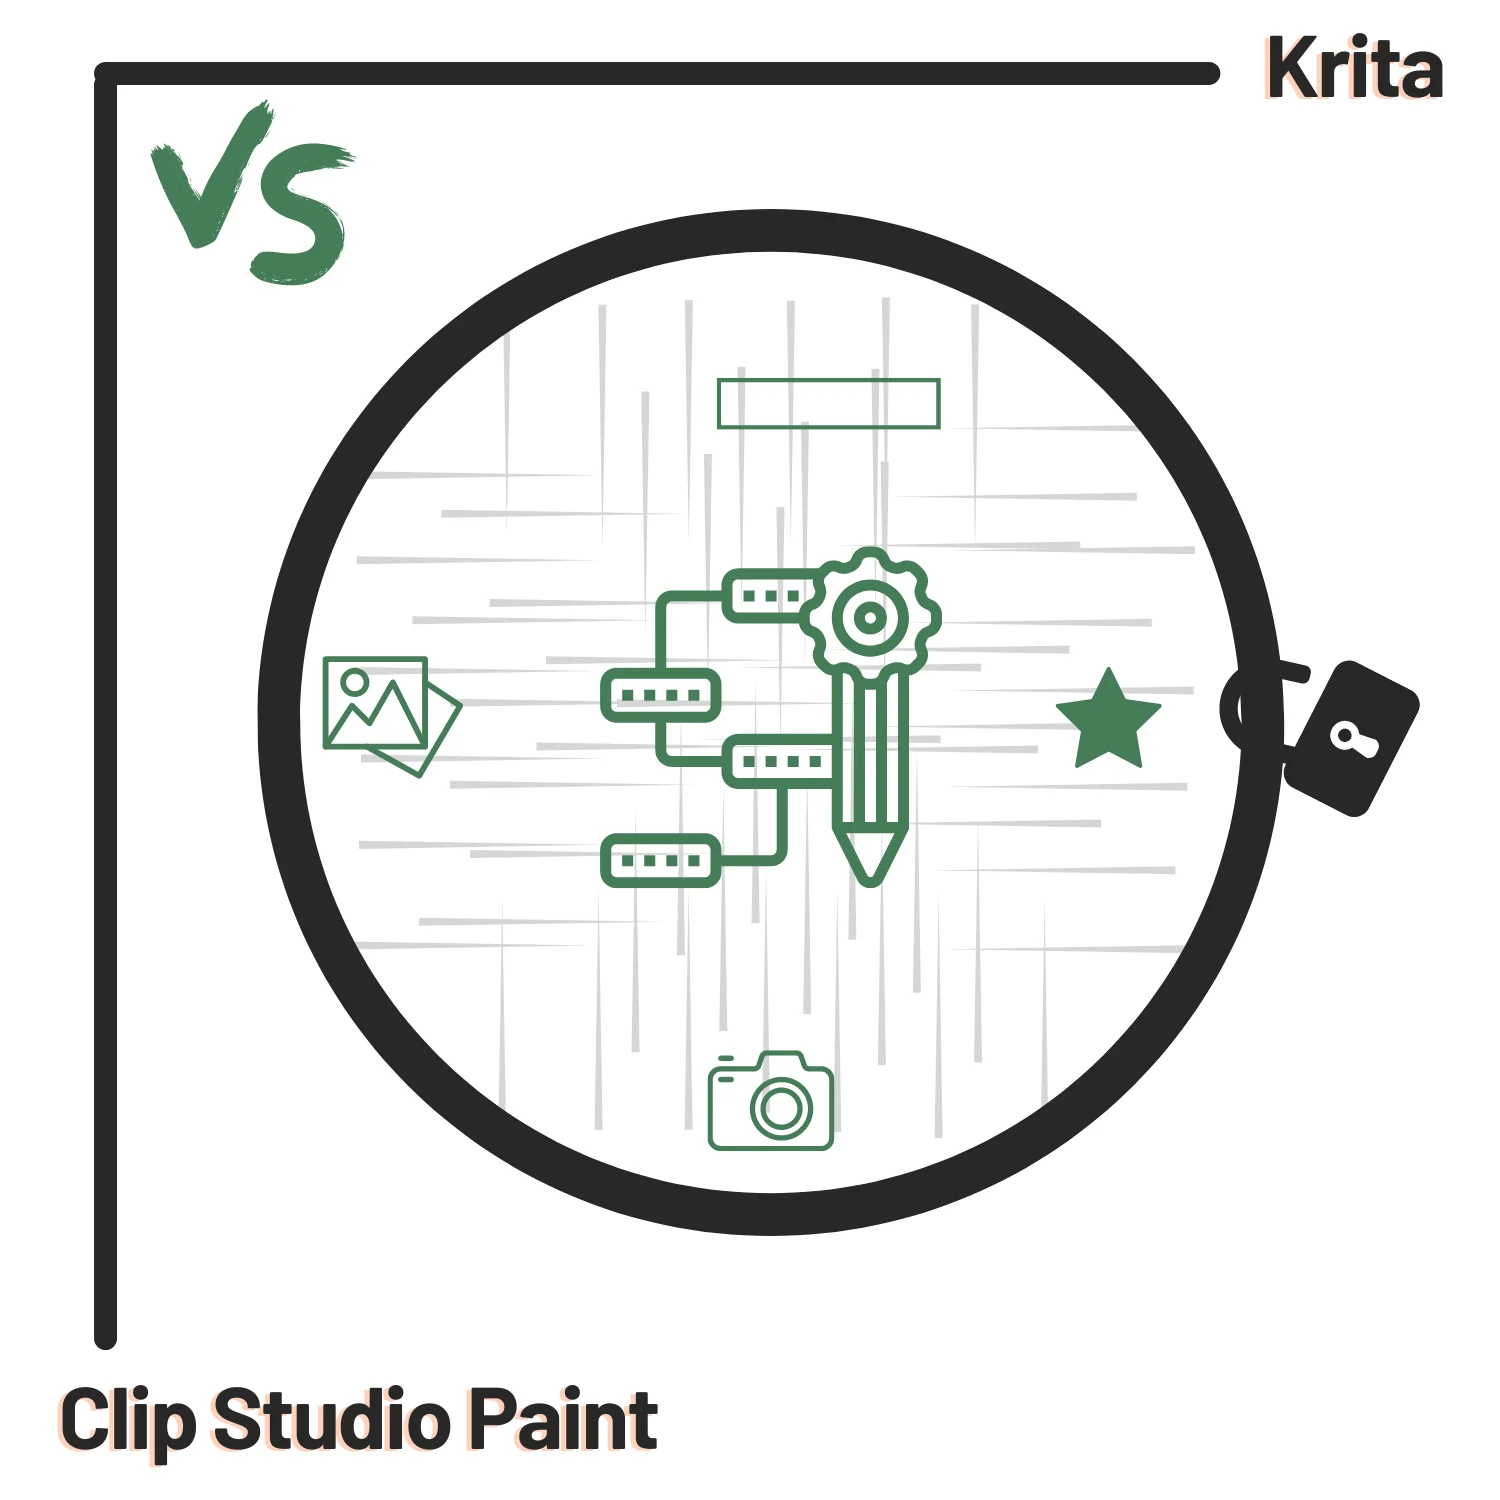 Krita vs. Clip Studio Paint